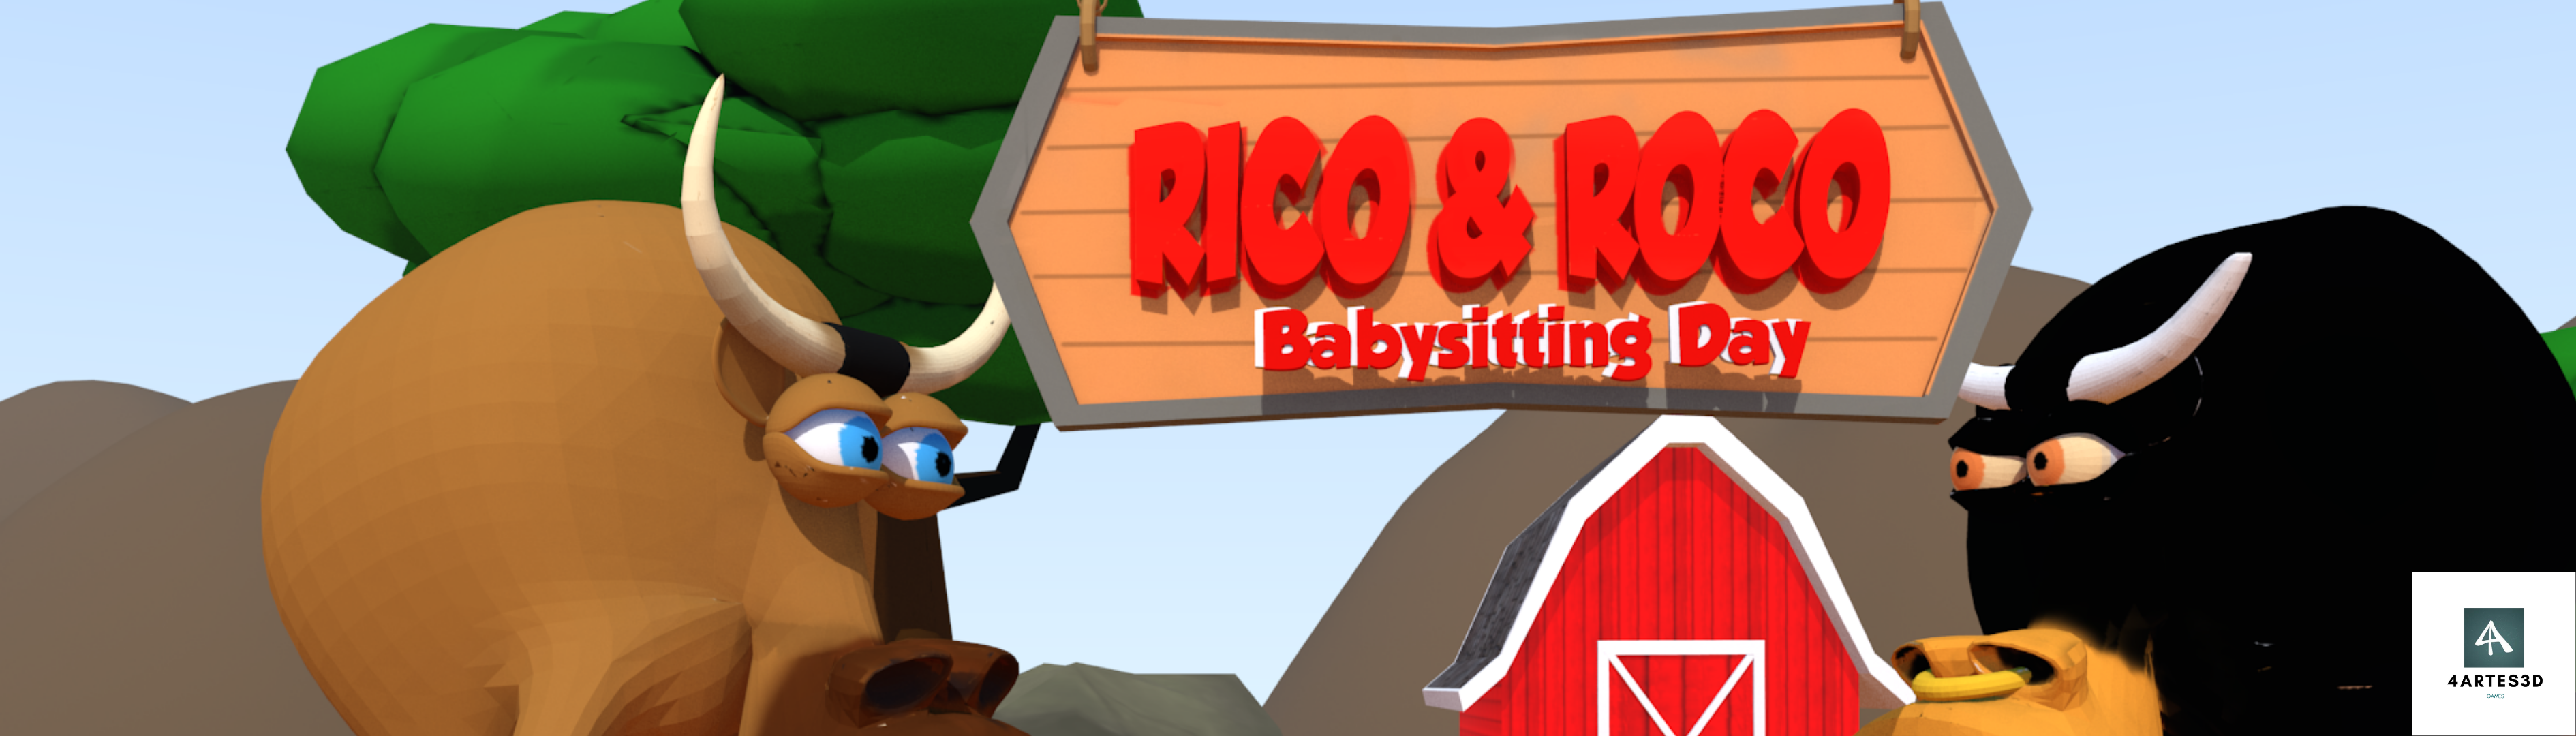 Rico & Roco Game